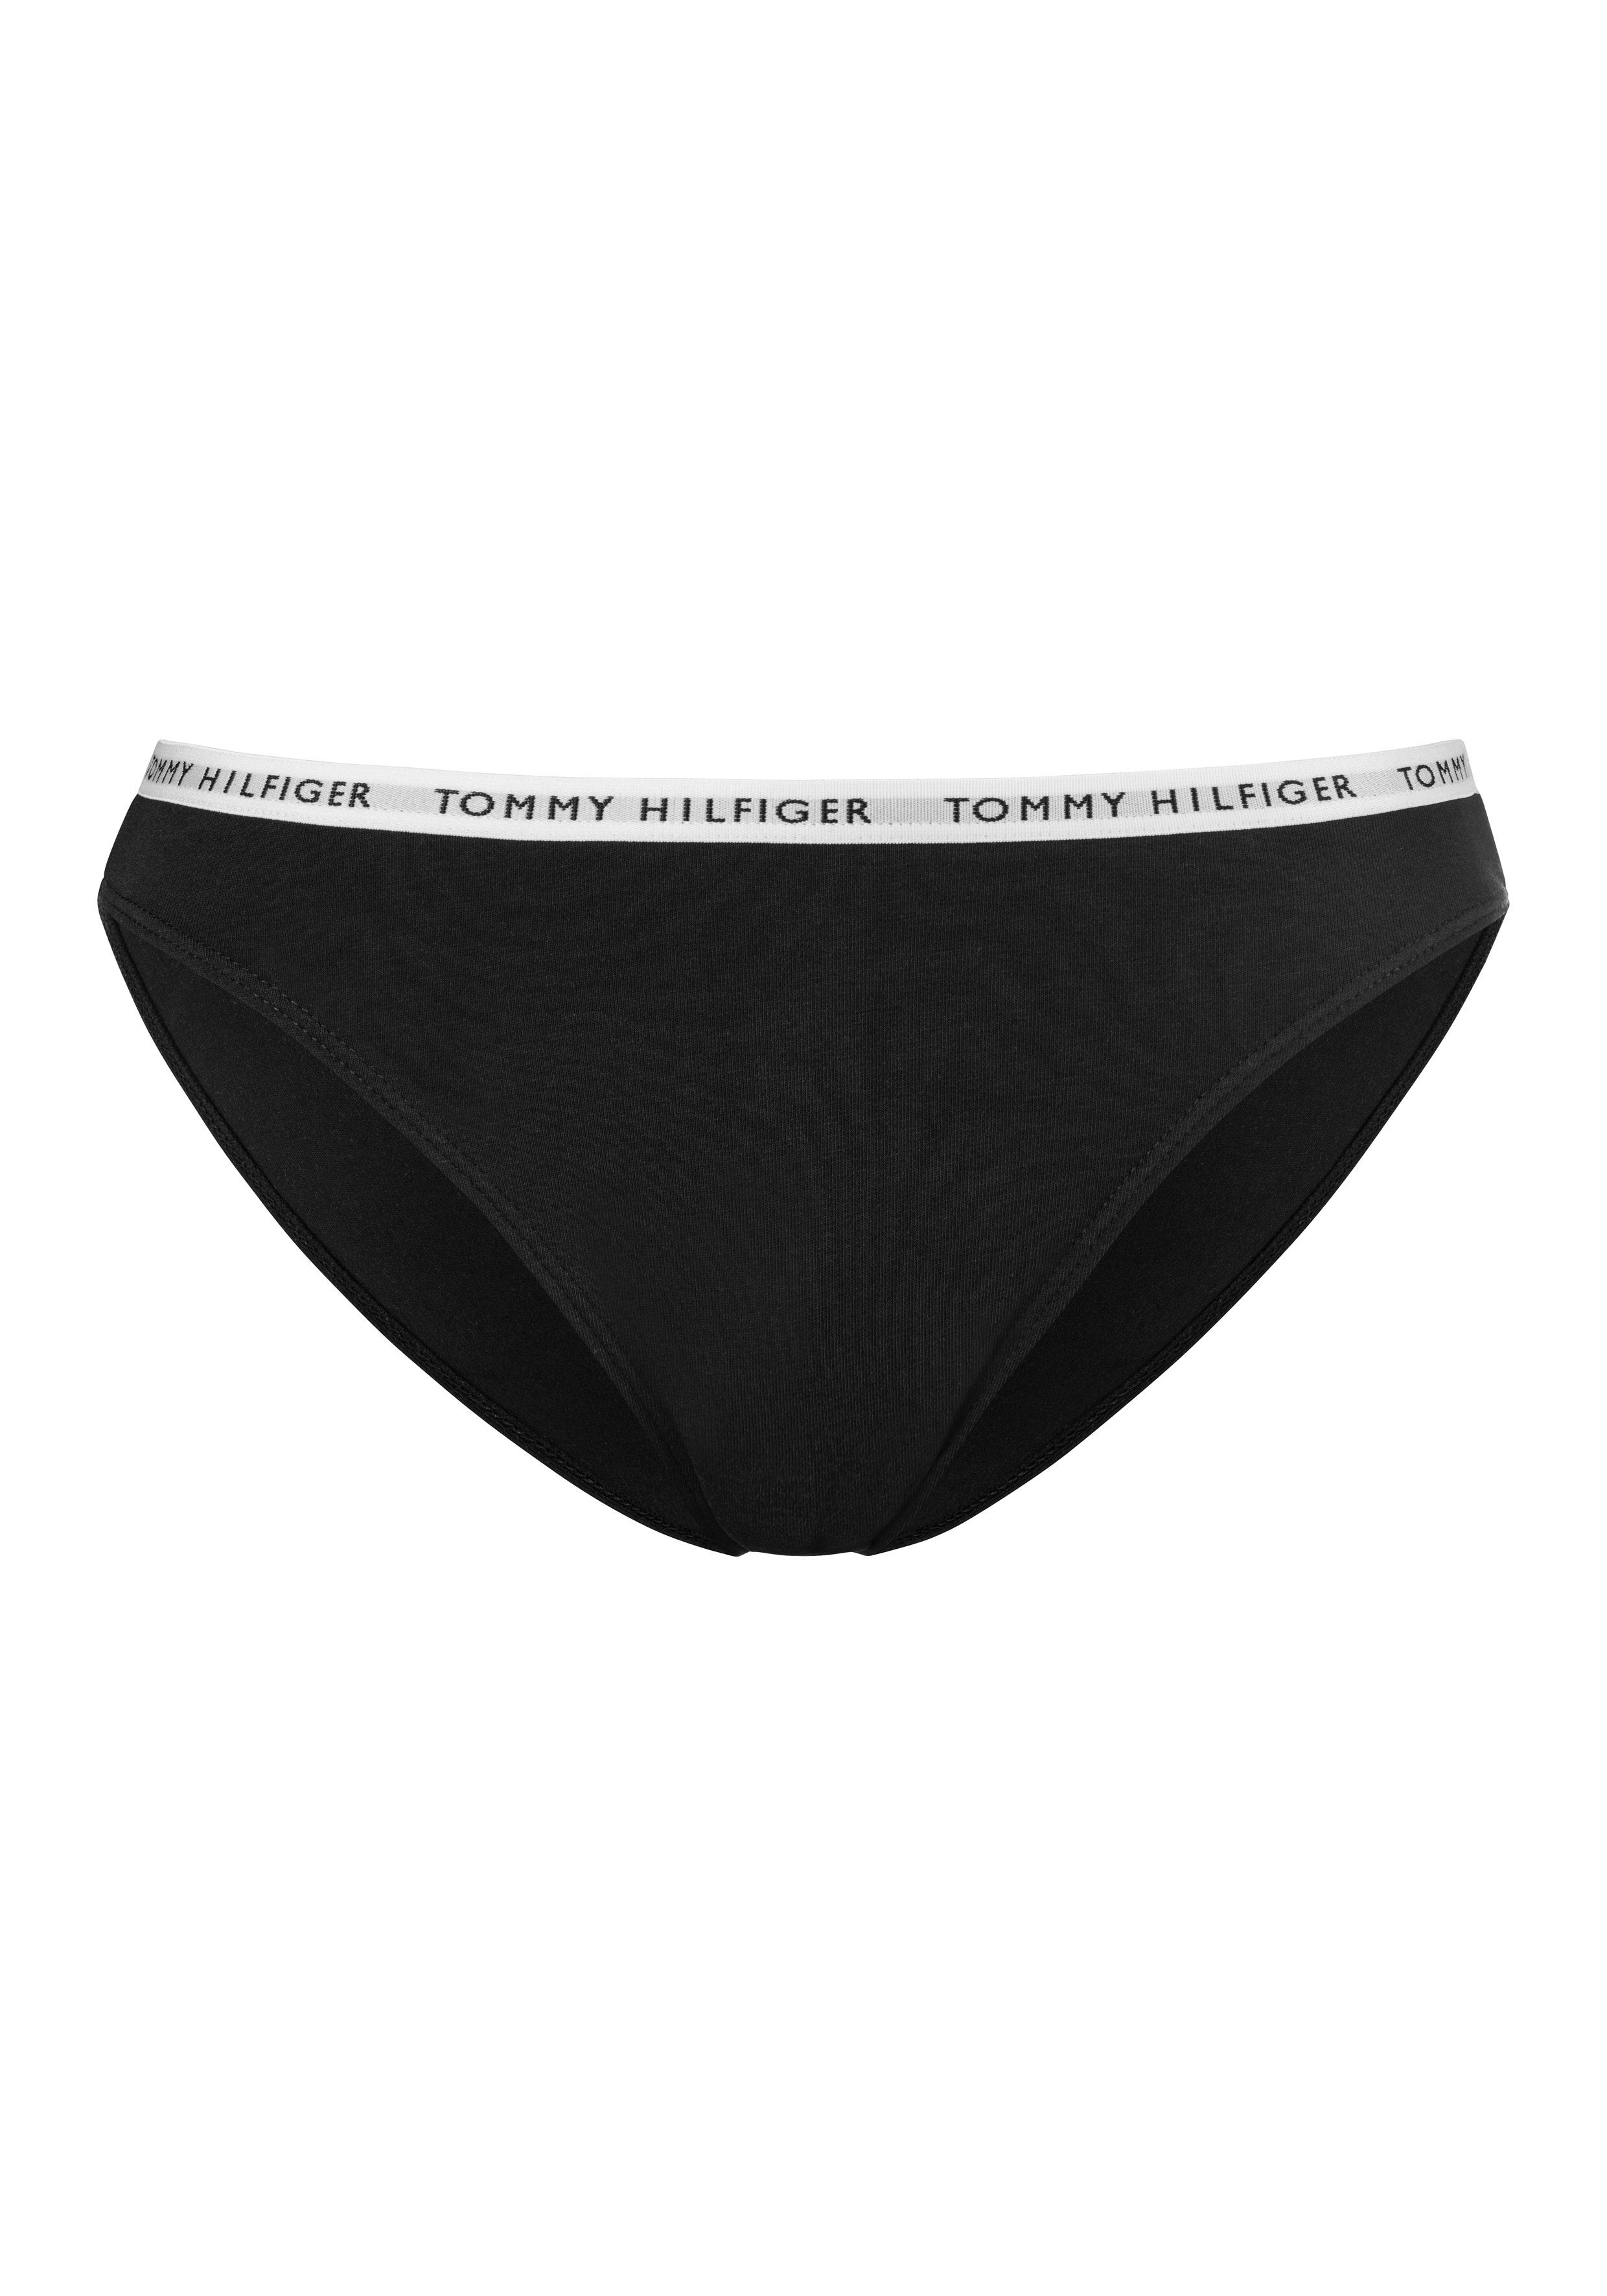 / Hilfiger (3-St) / mit Tommy white grey medium schmalem black Bikinislip Underwear htr Logobündchen